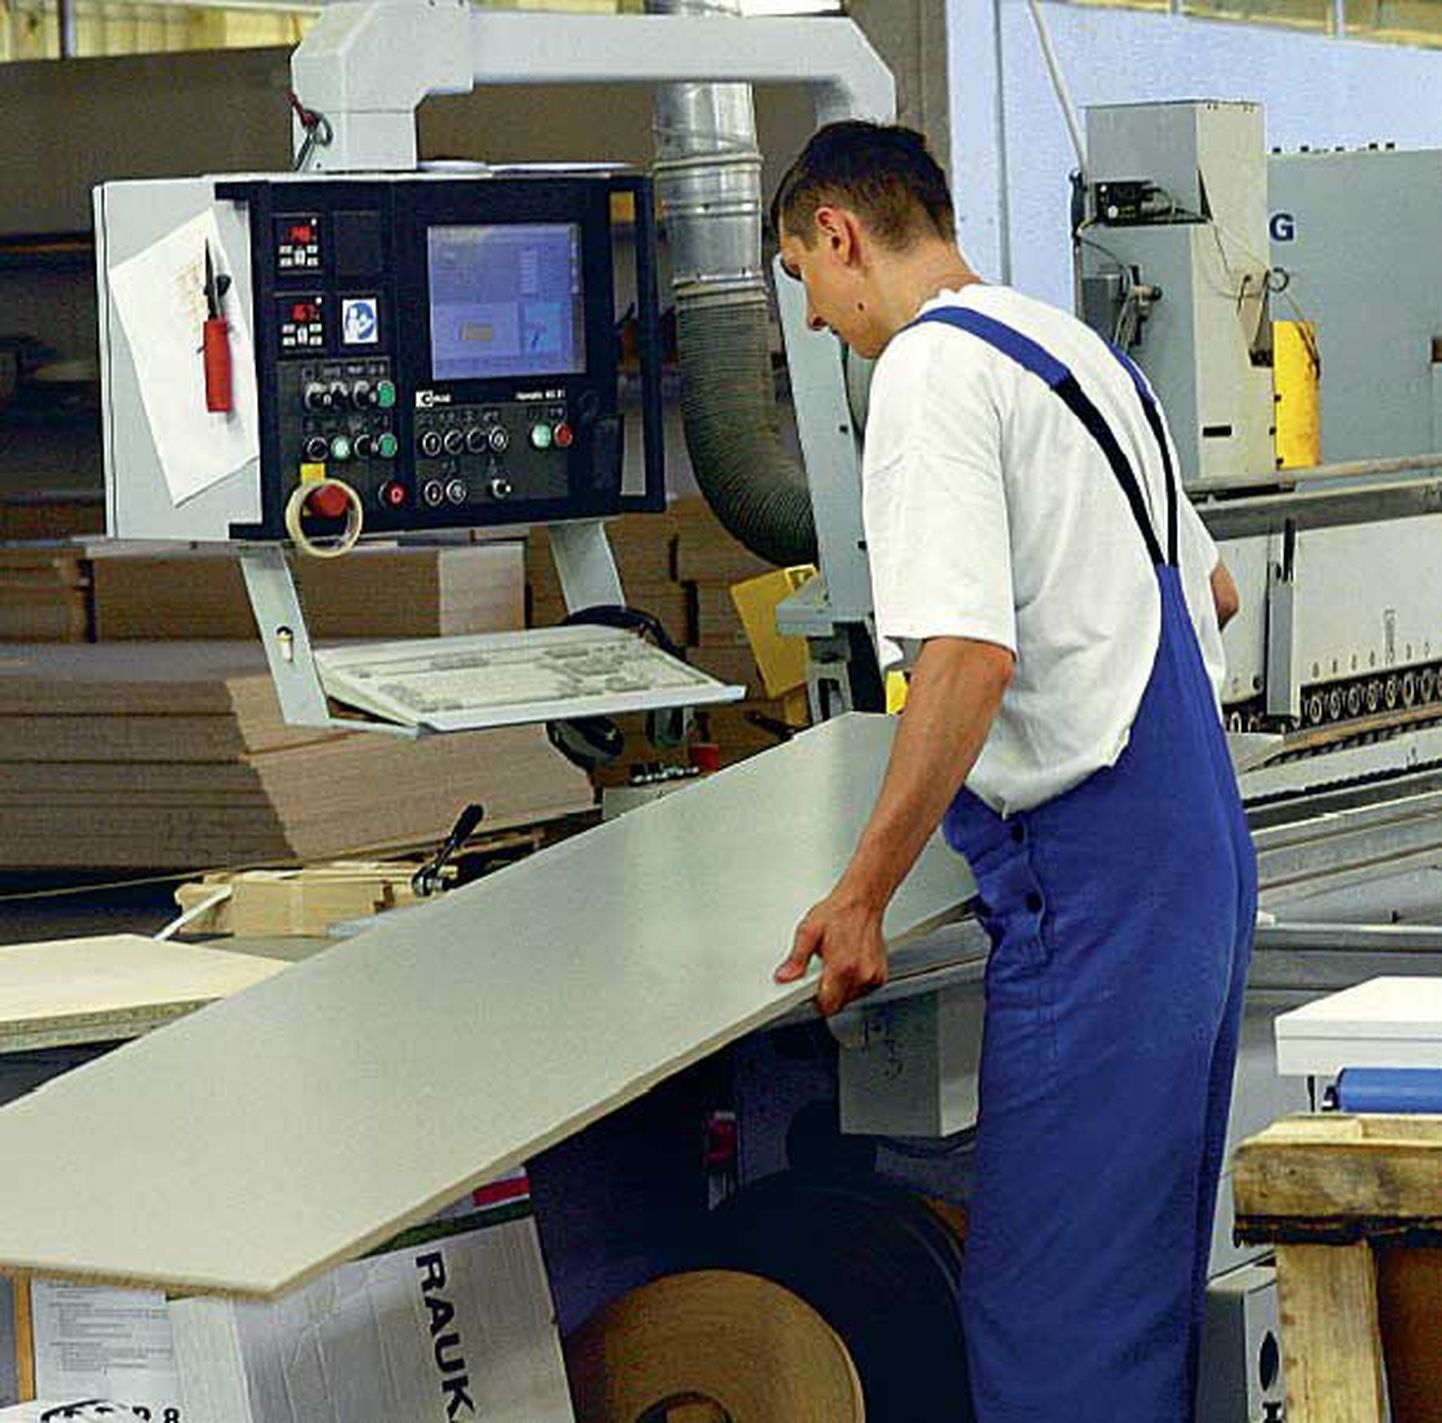 Standardi mööblitööstus on üks ettevõtetest, kes on teatanud tootmise kokkutõmbamisest.